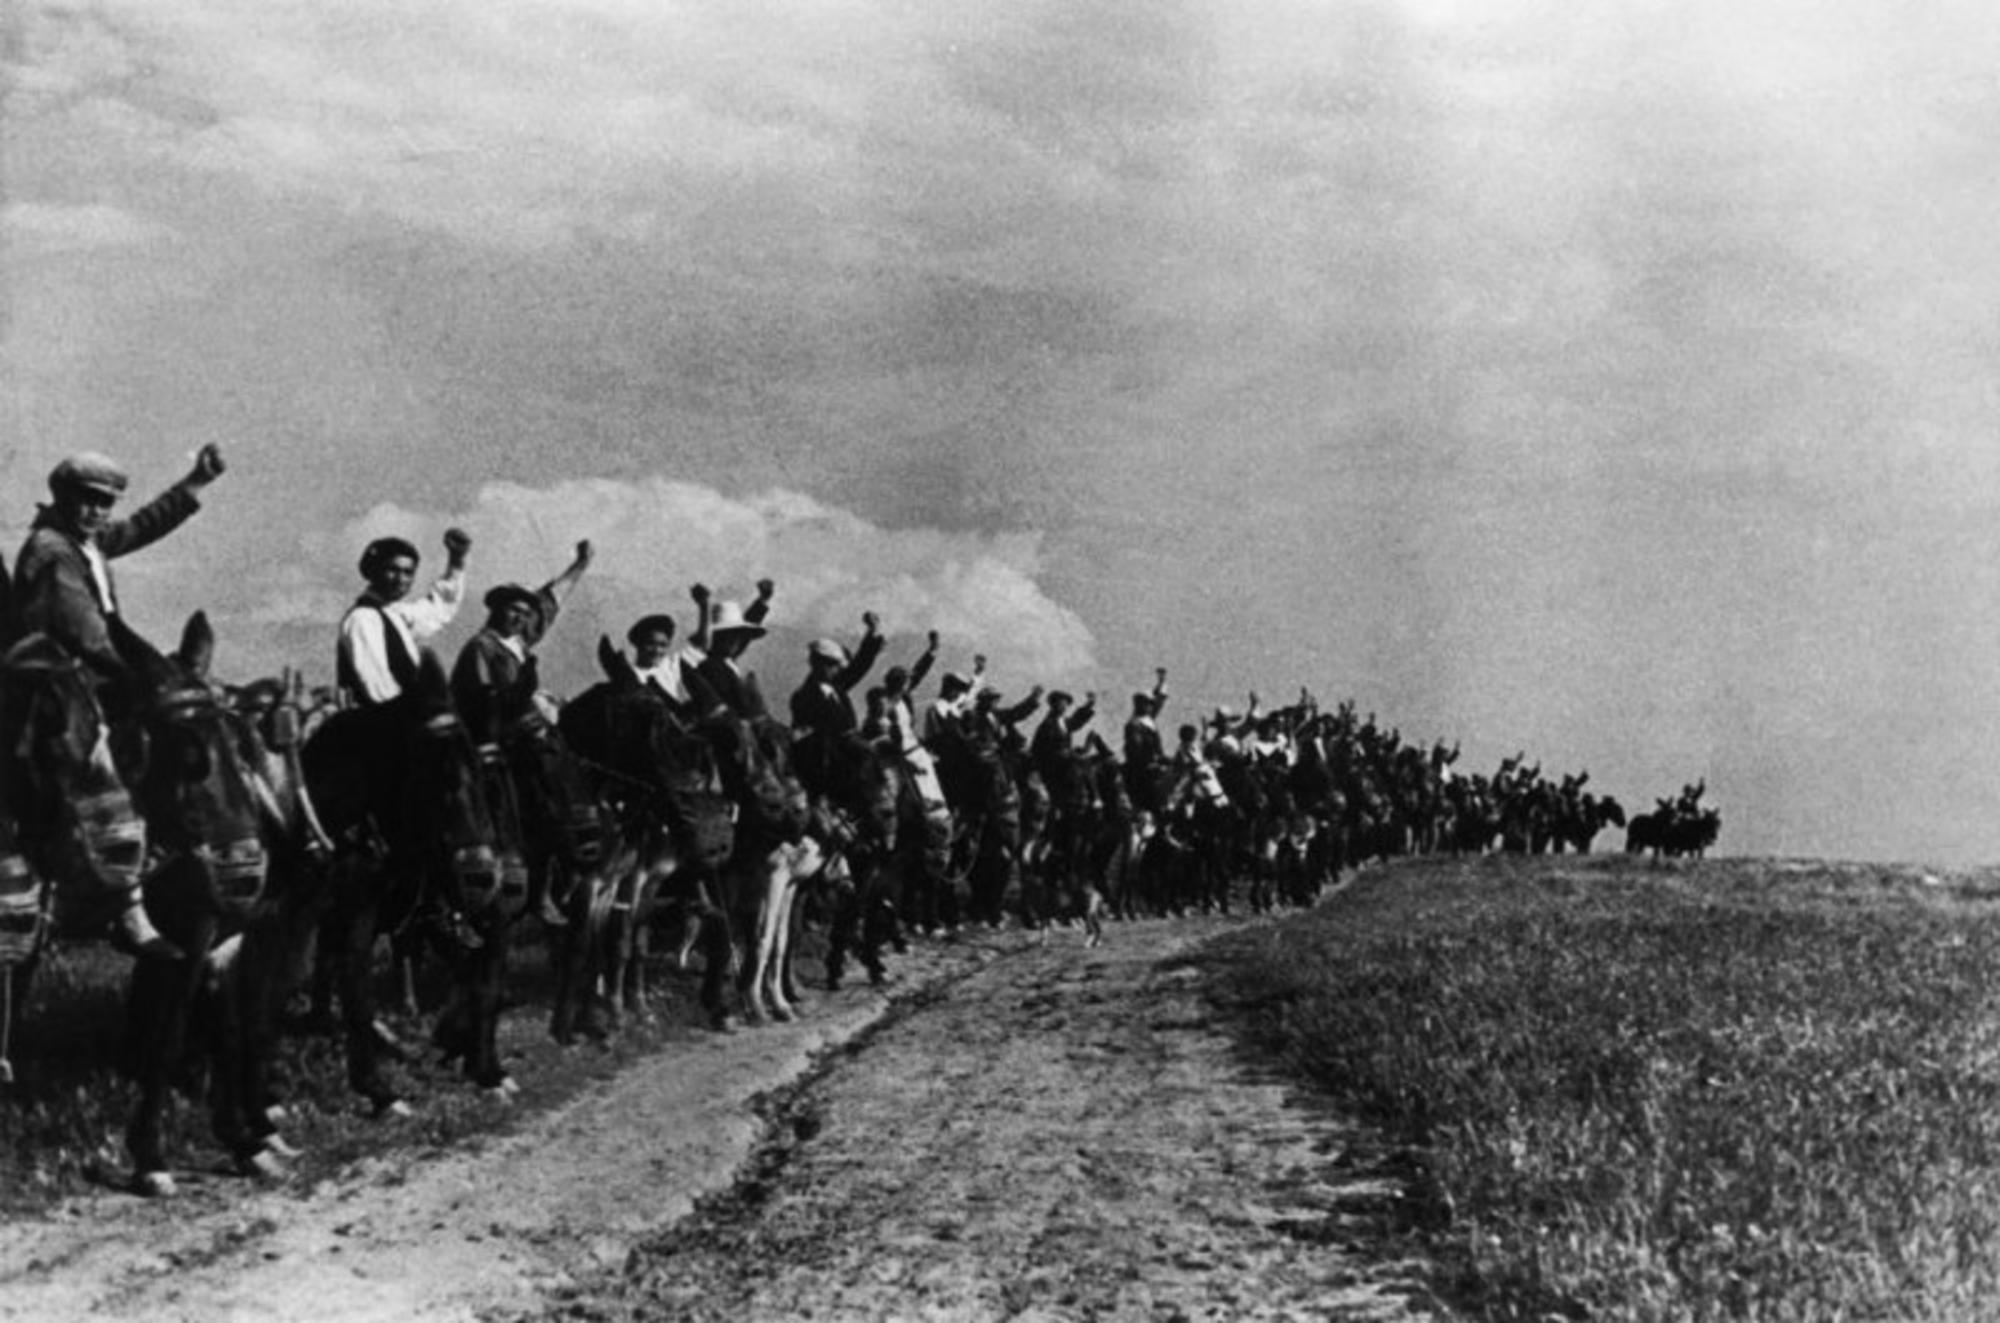 Levantamiento 25 de marzo 1936 en Extremadura. 70.000 campesinos extremeños ocupan tierras